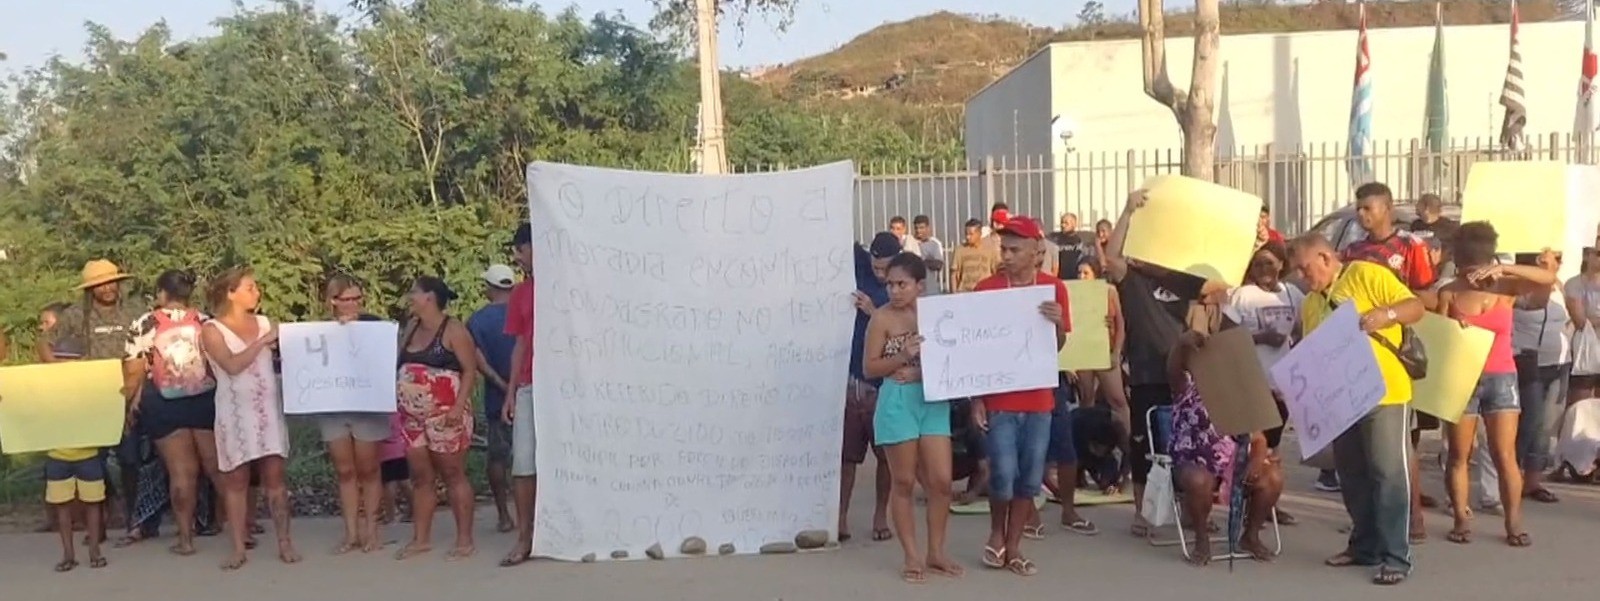 STF suspende reintegração de posse e demolição de casas no Morro do Fórum em Ubatuba, SP